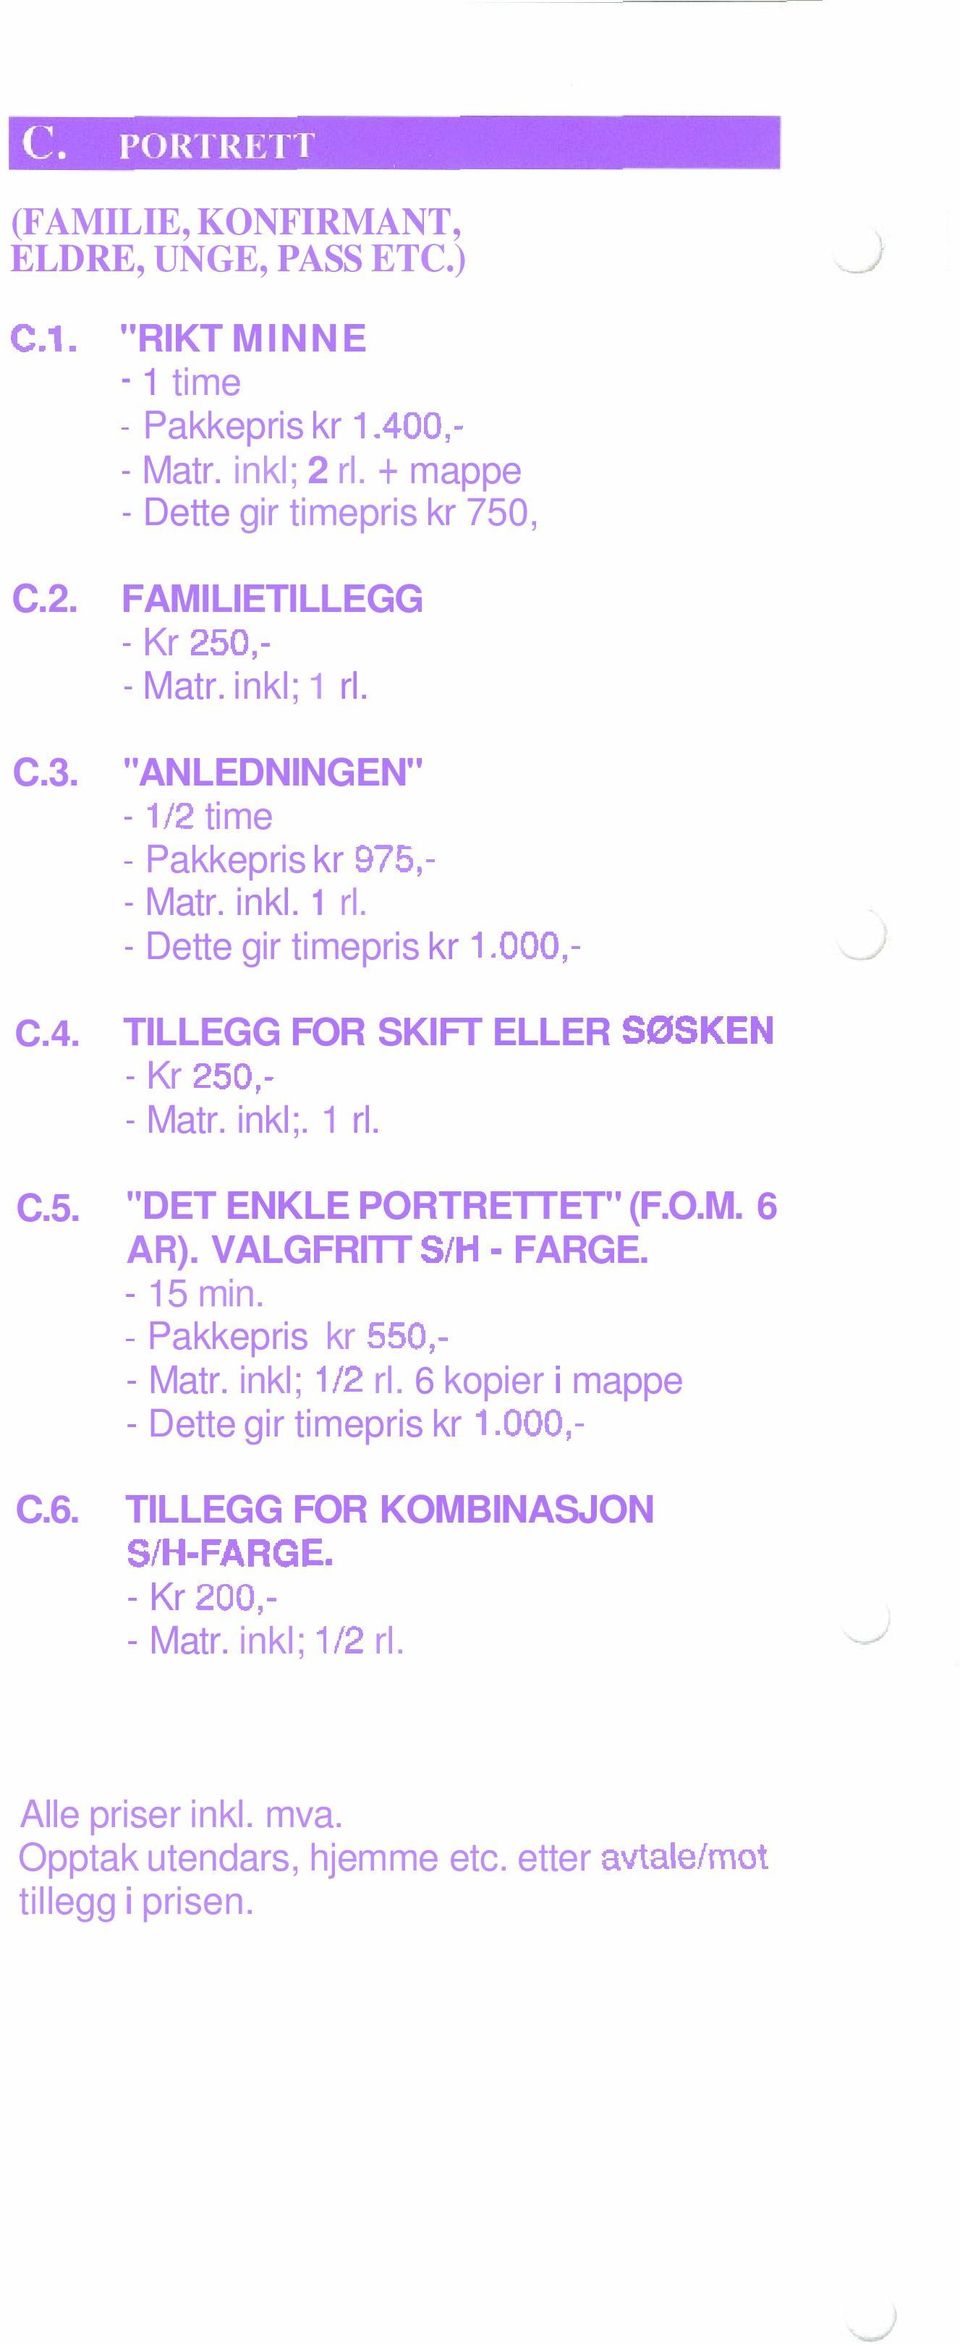 000,- TILLEGG FOR SKIFT ELLER S0SKEN - Kr 250,- - Matr. inkl;. 1 rl. C.5. "DET ENKLE PORTRETTET" (F.O.M. 6 AR). VALGFRITT S/H - FARGE. - 15 min. - Pakkepris kr 550,- - Matr.